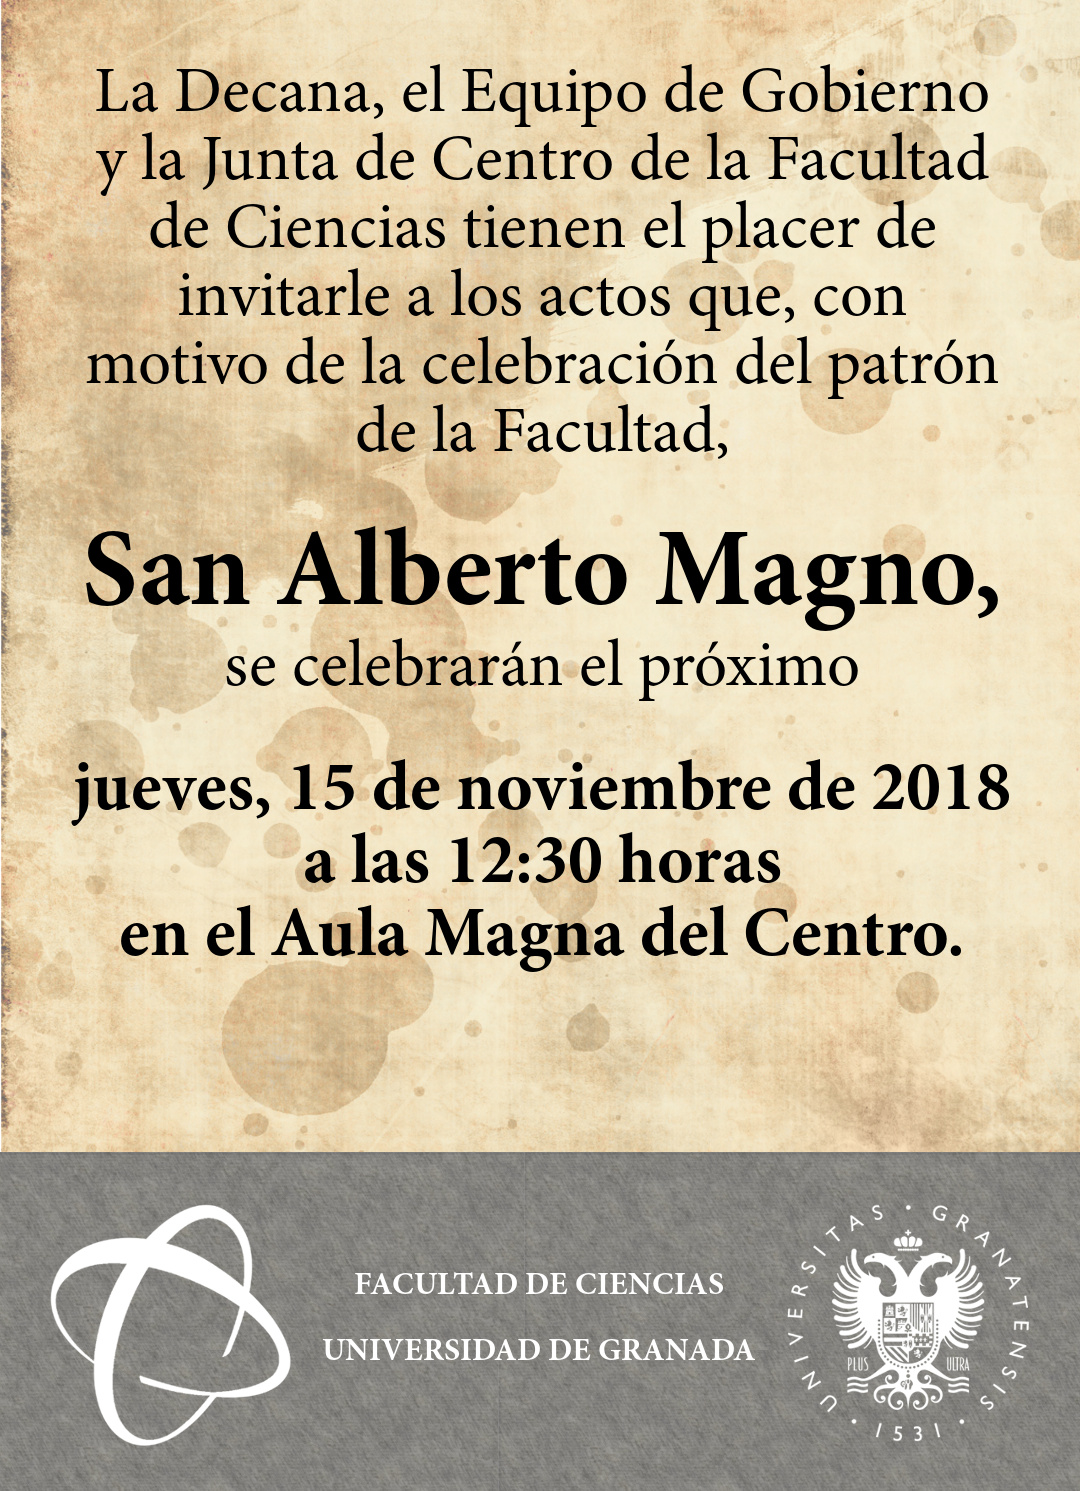 San Alberto Magno 2018